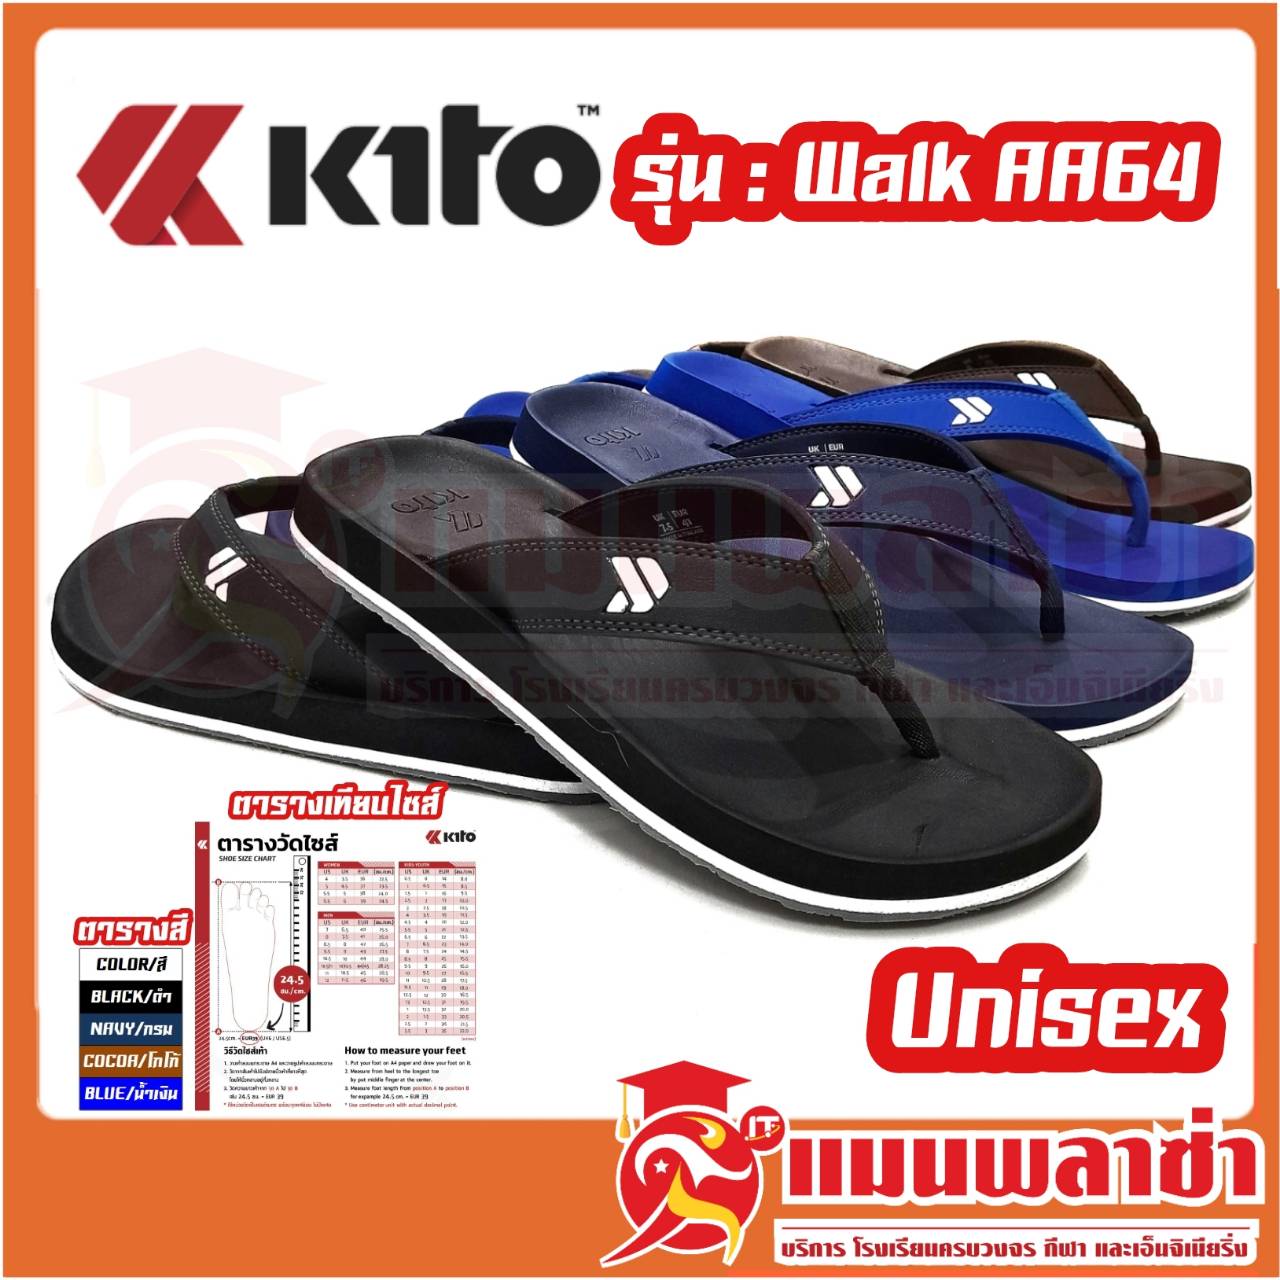 รองเท้าแตะ Kito (กีโต้) Walk Unisex รุ่น AA64 ใส่สบาย แบบมี สไตล์ สินค้าพร้อมส่ง